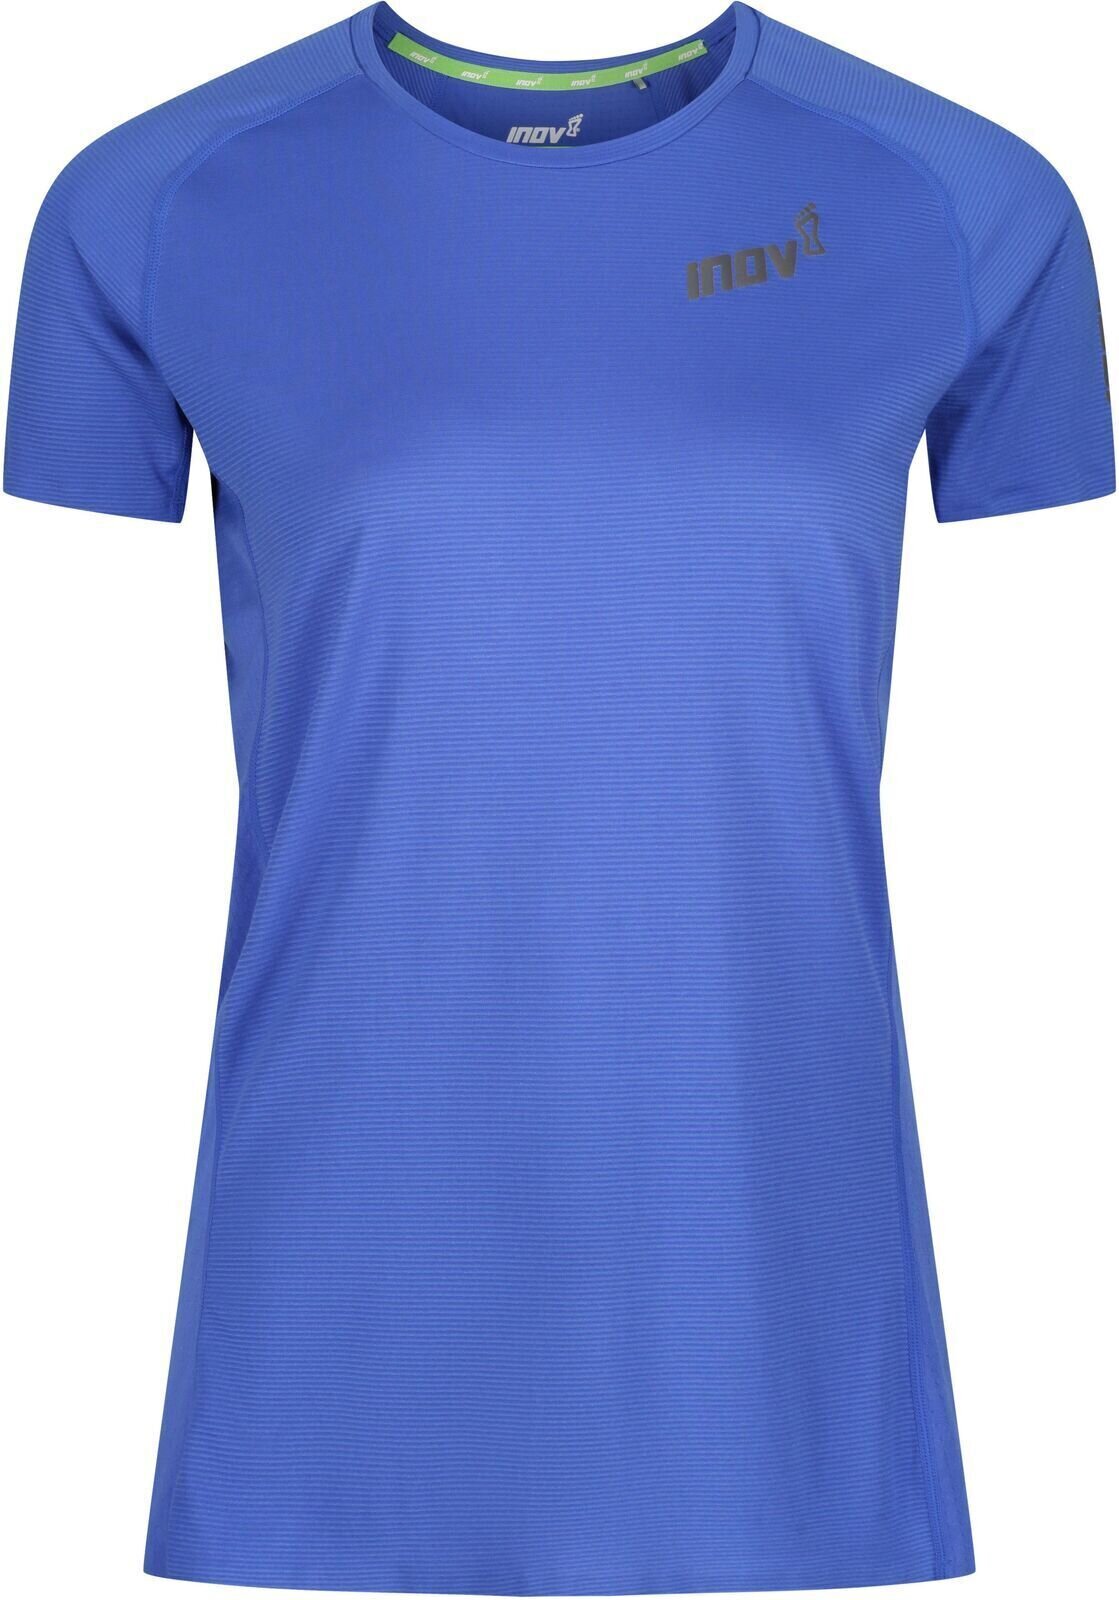 Běžecké tričko s krátkým rukávem
 Inov-8 Baso Elite Blue 38 Běžecké tričko s krátkým rukávem